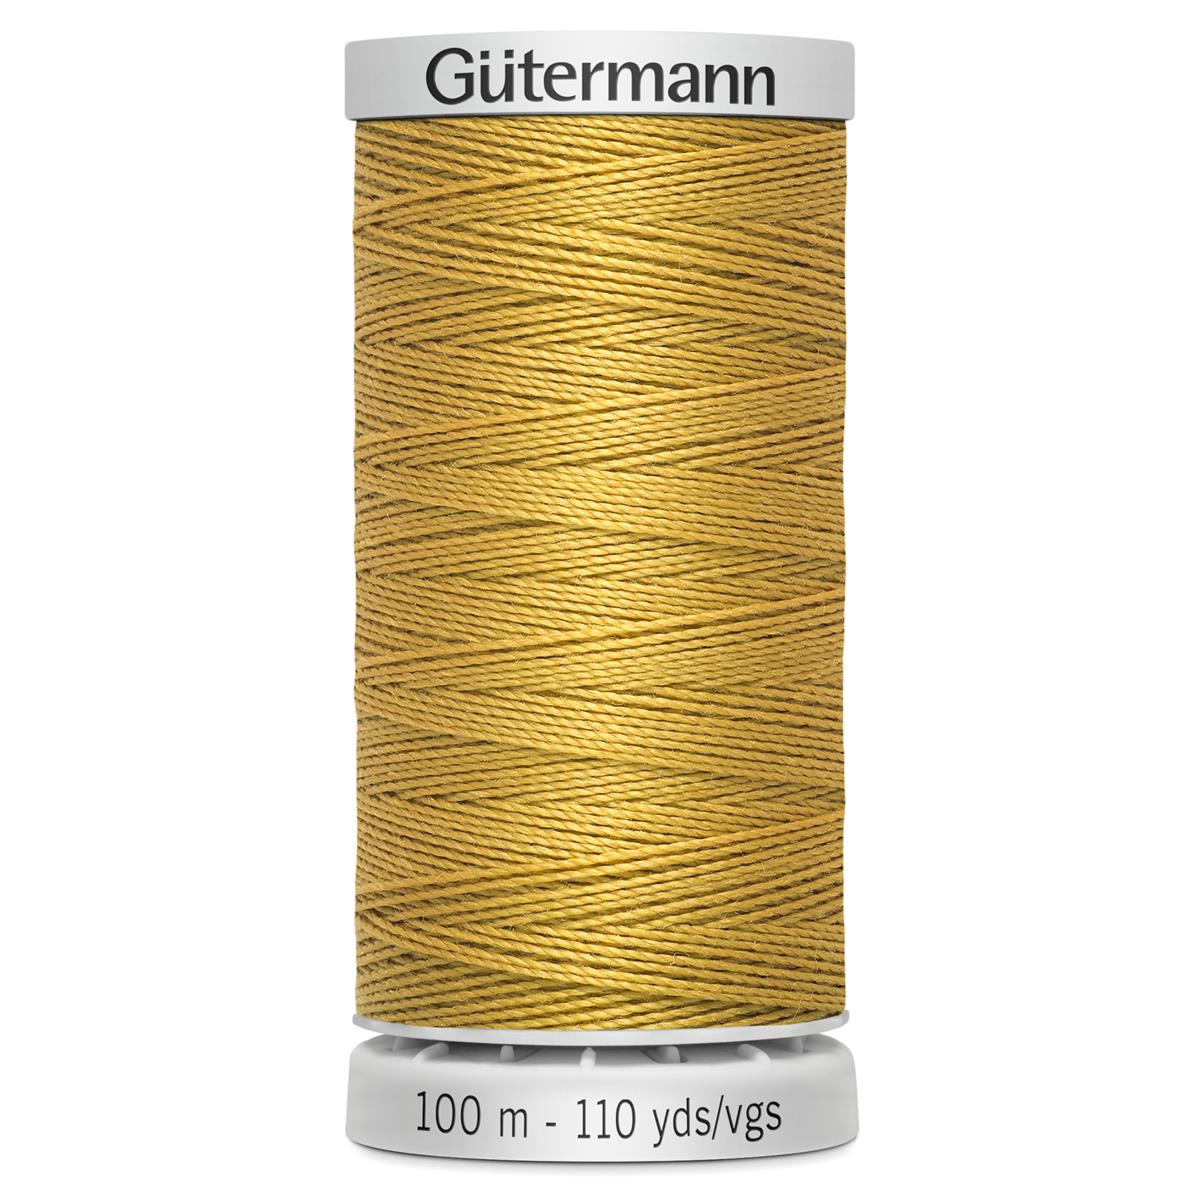 844 2.25 eur/100 mètres Gütermann filterie tout plus proche de 200m/FB 